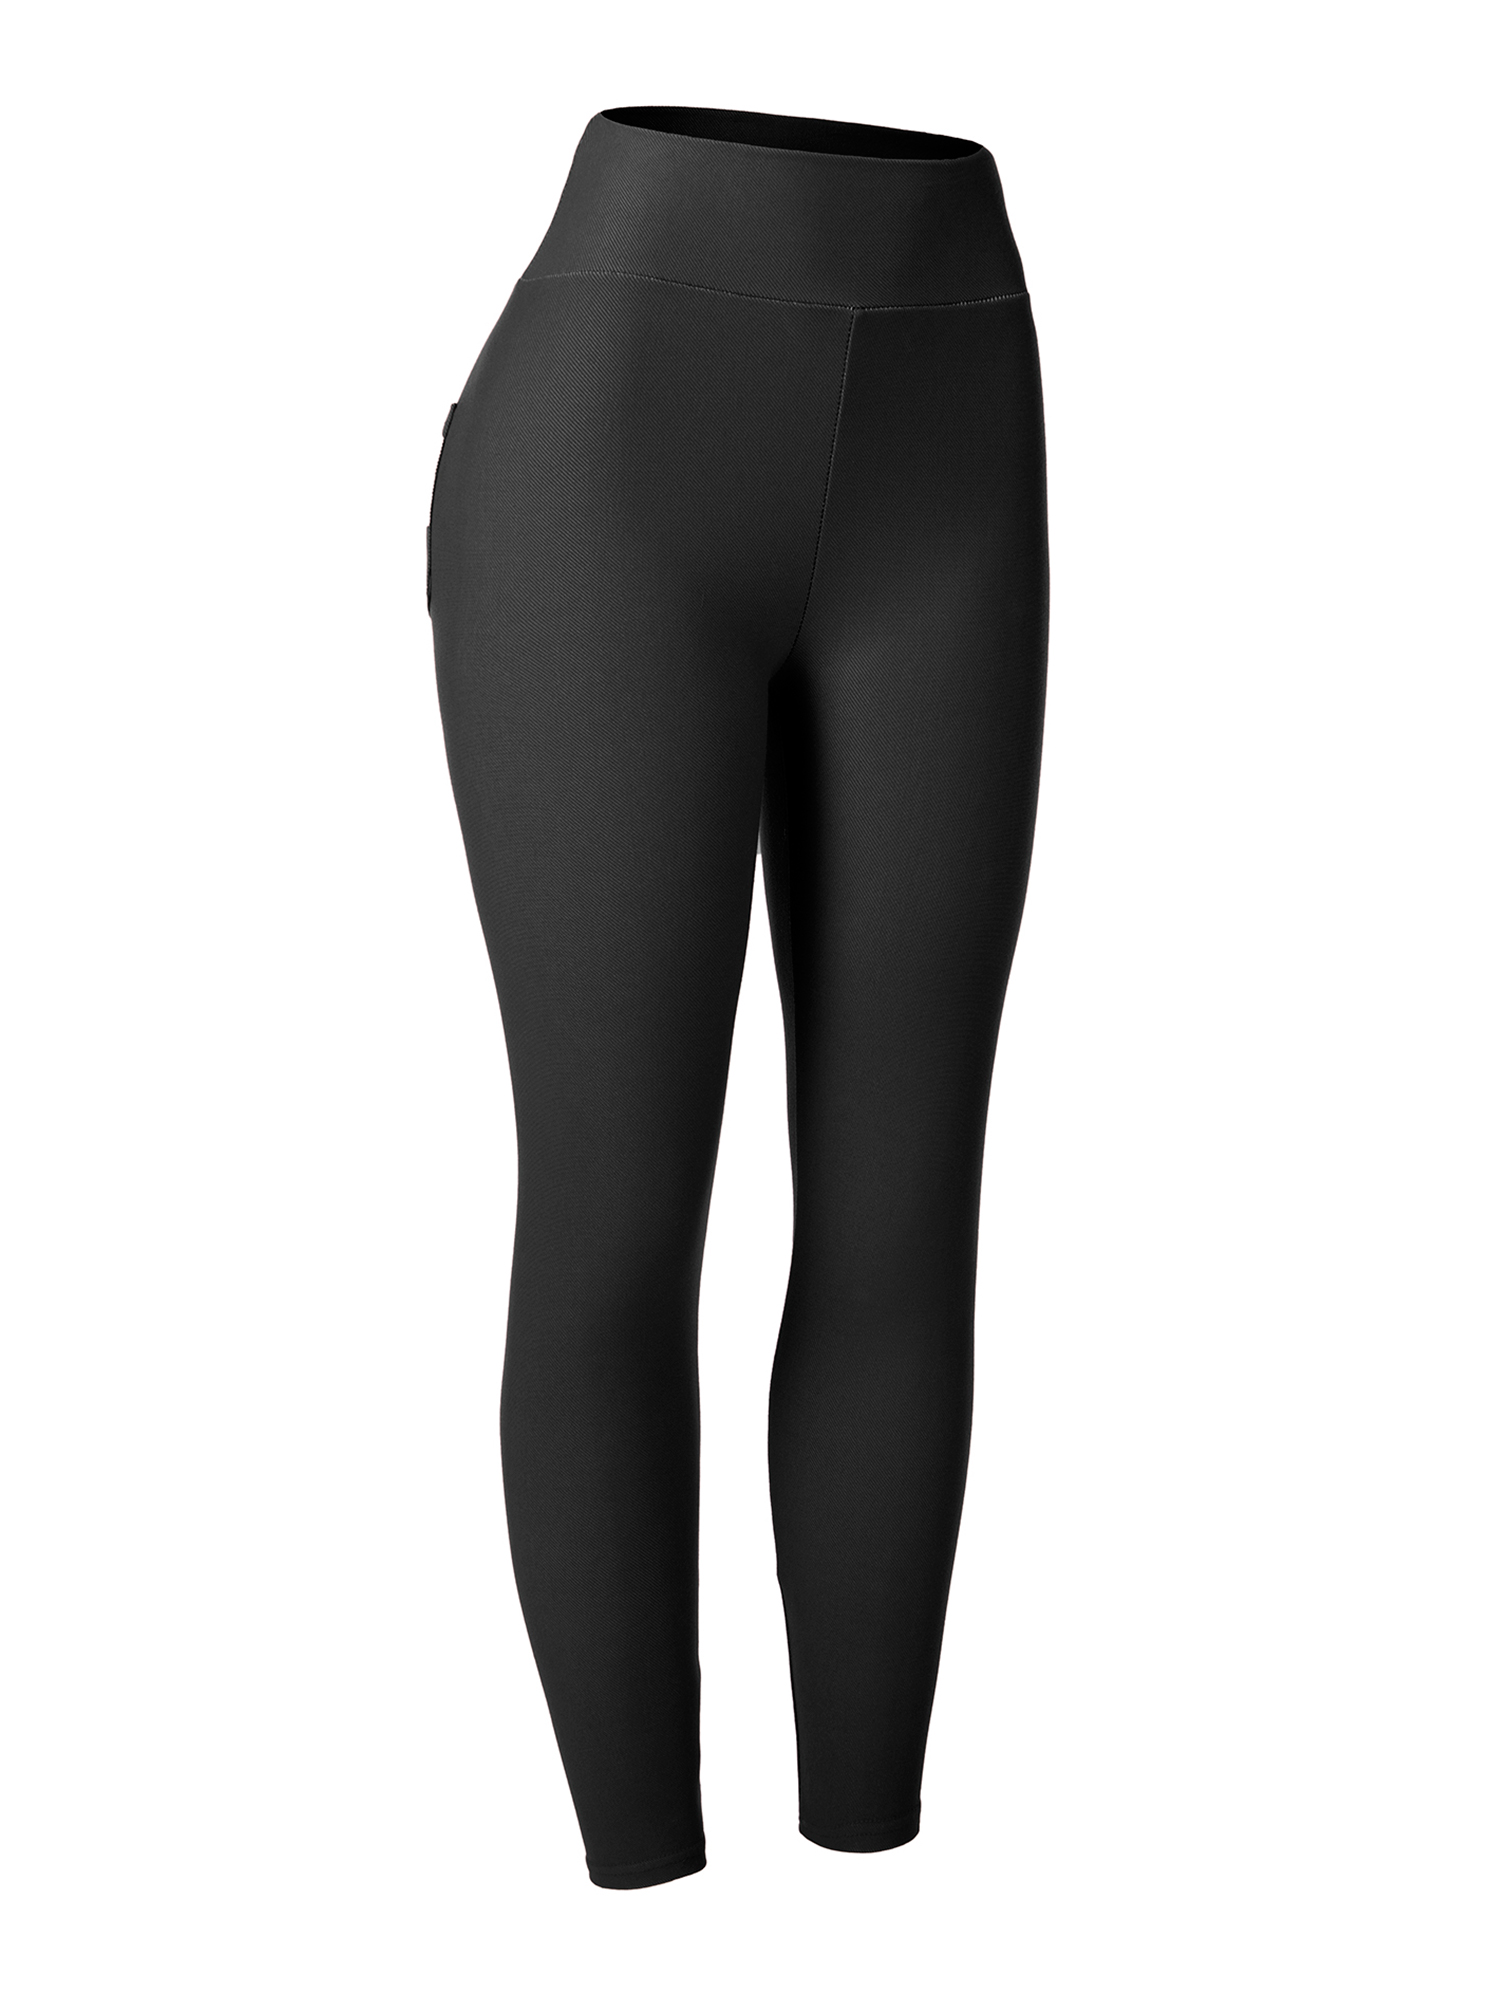 LELINTA Women's High Waist Denim Leggings High Stretchy Full Length Basic Skinny Pants Black/Navy/Red - image 2 of 8